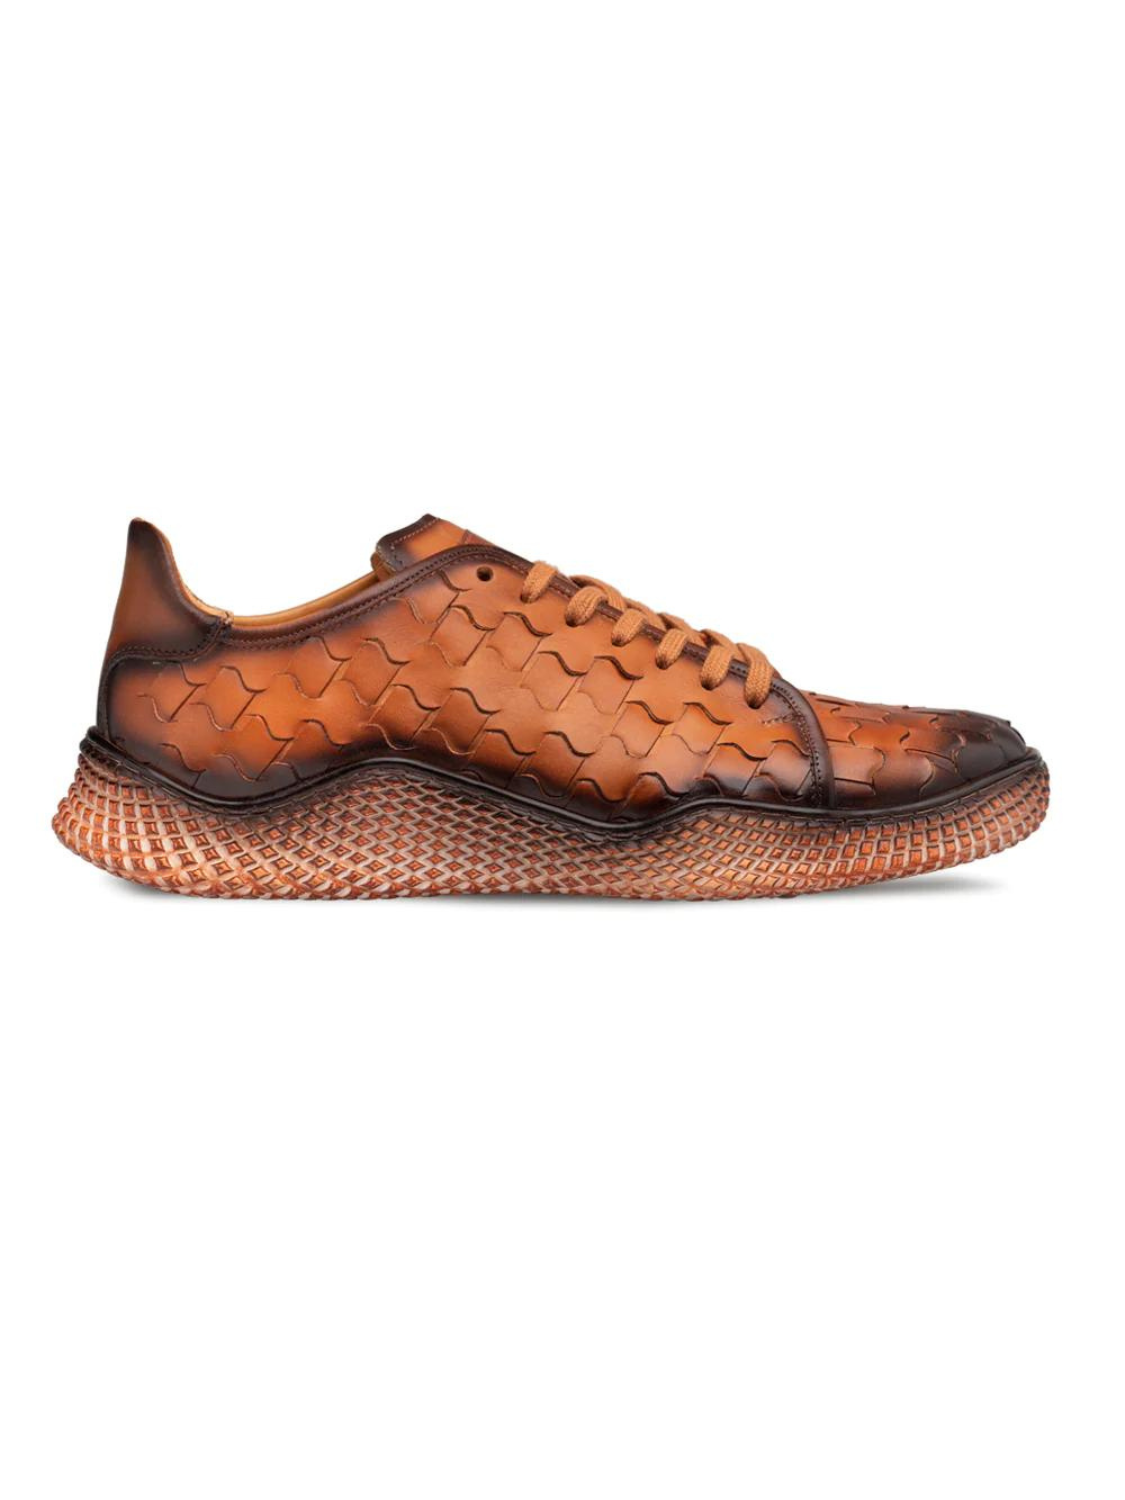 Mezlan Cognac Woven Leather Sneaker